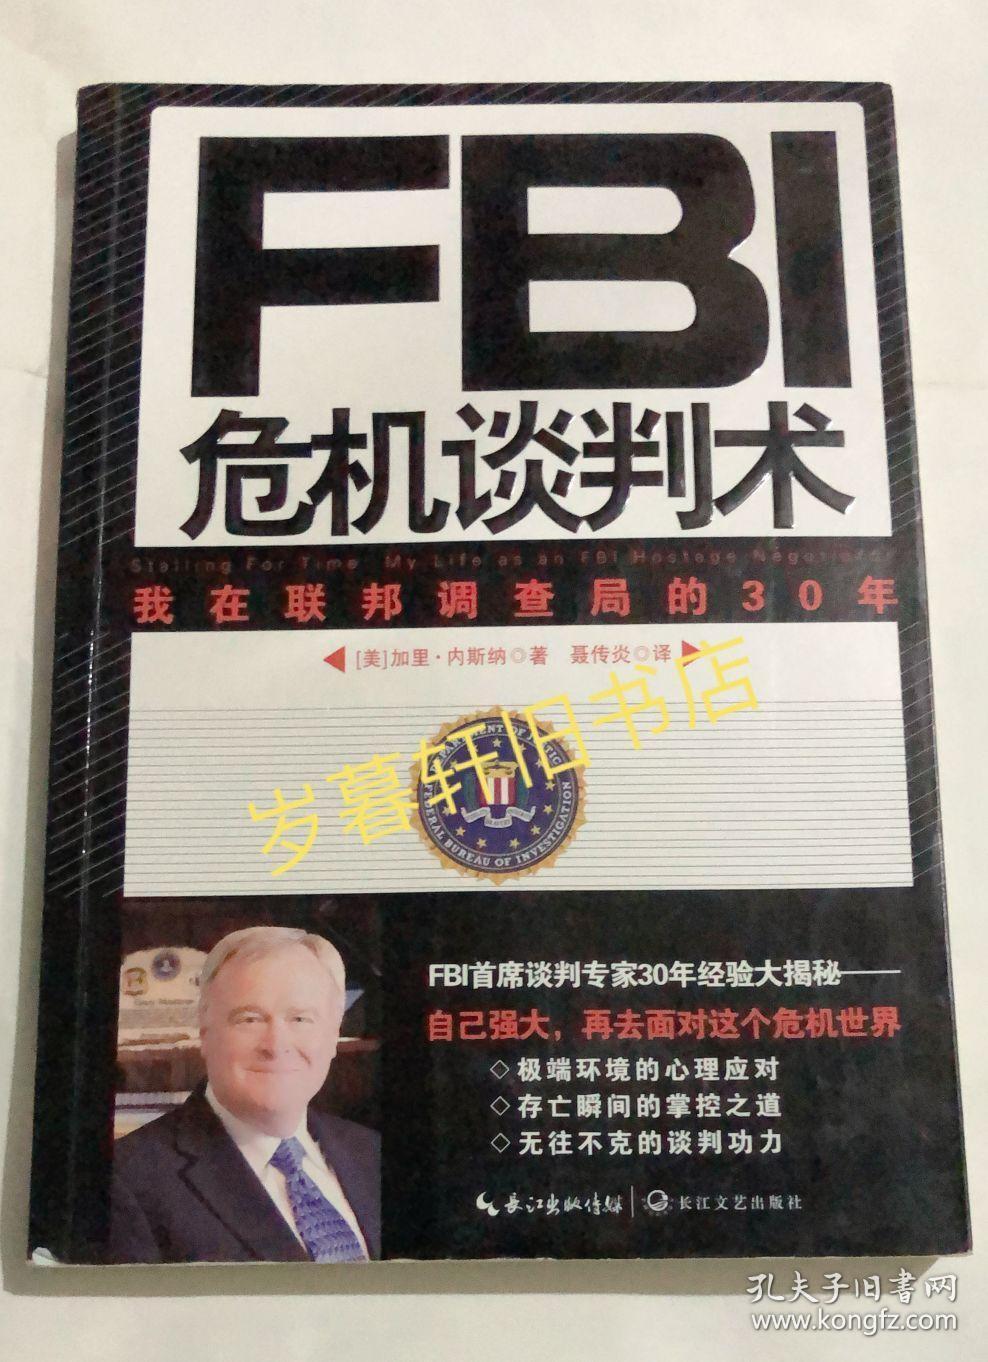 fbi危机谈判术*